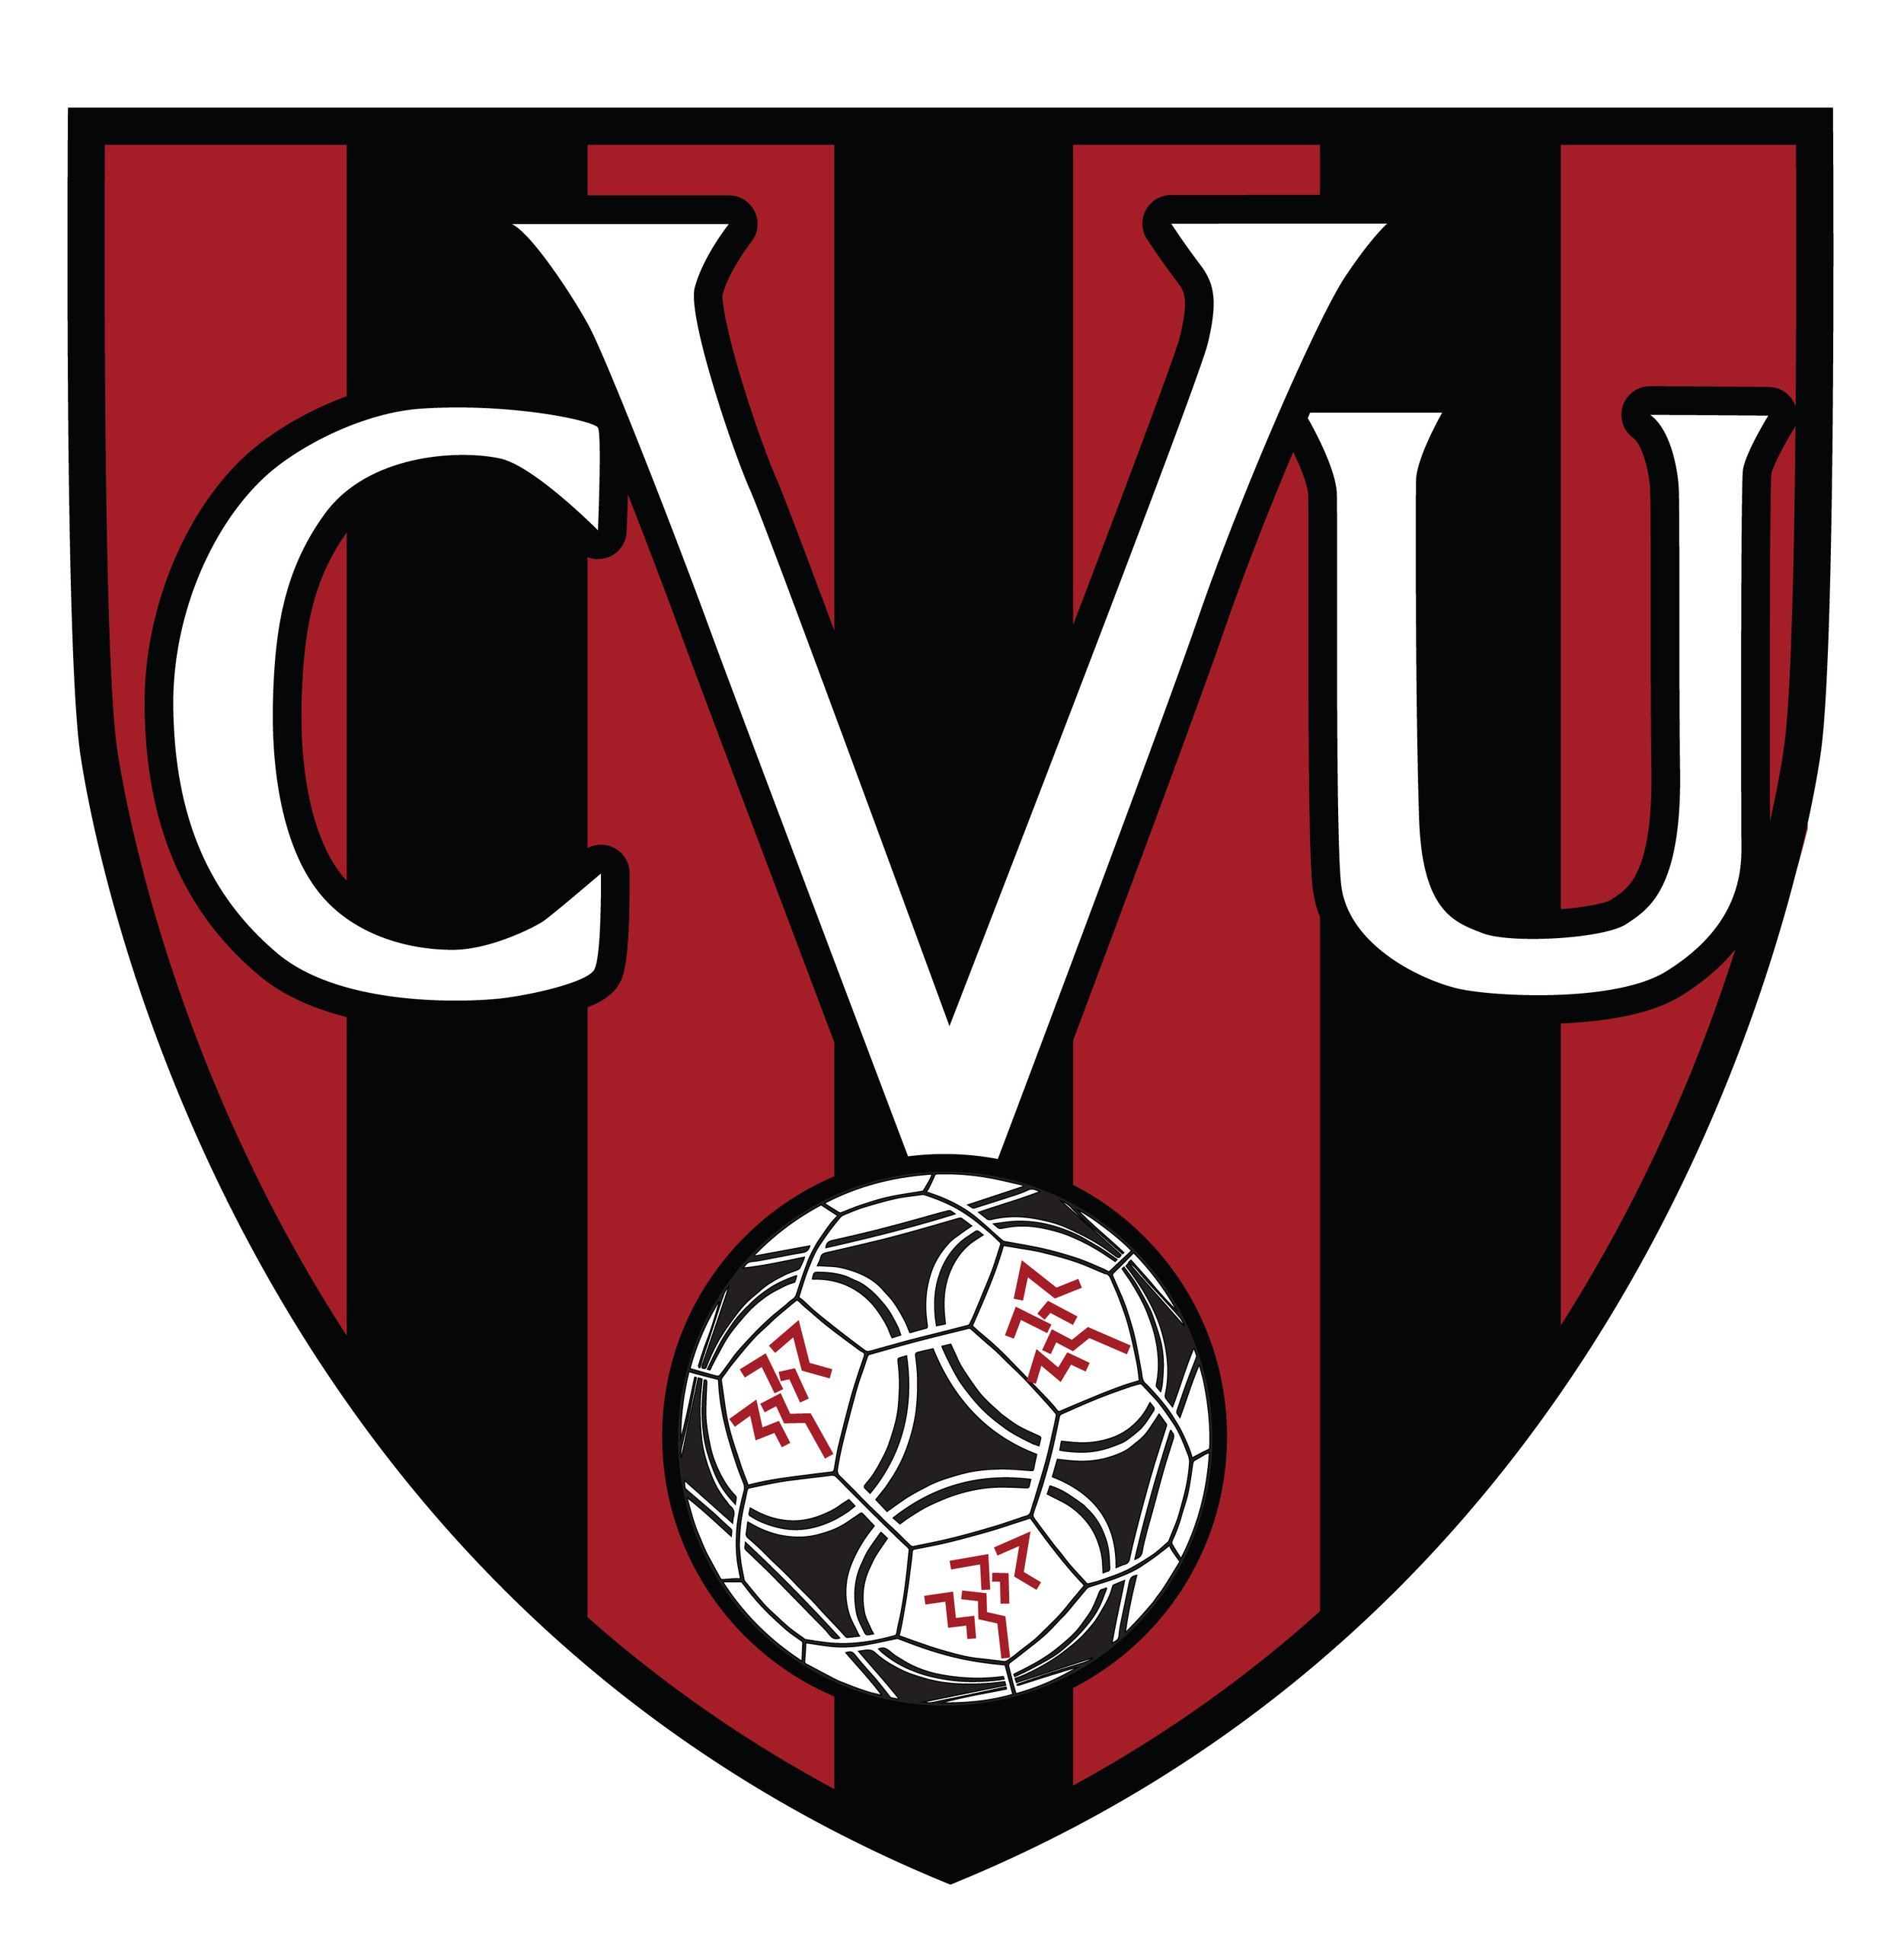 CVU Logo (1).jpg